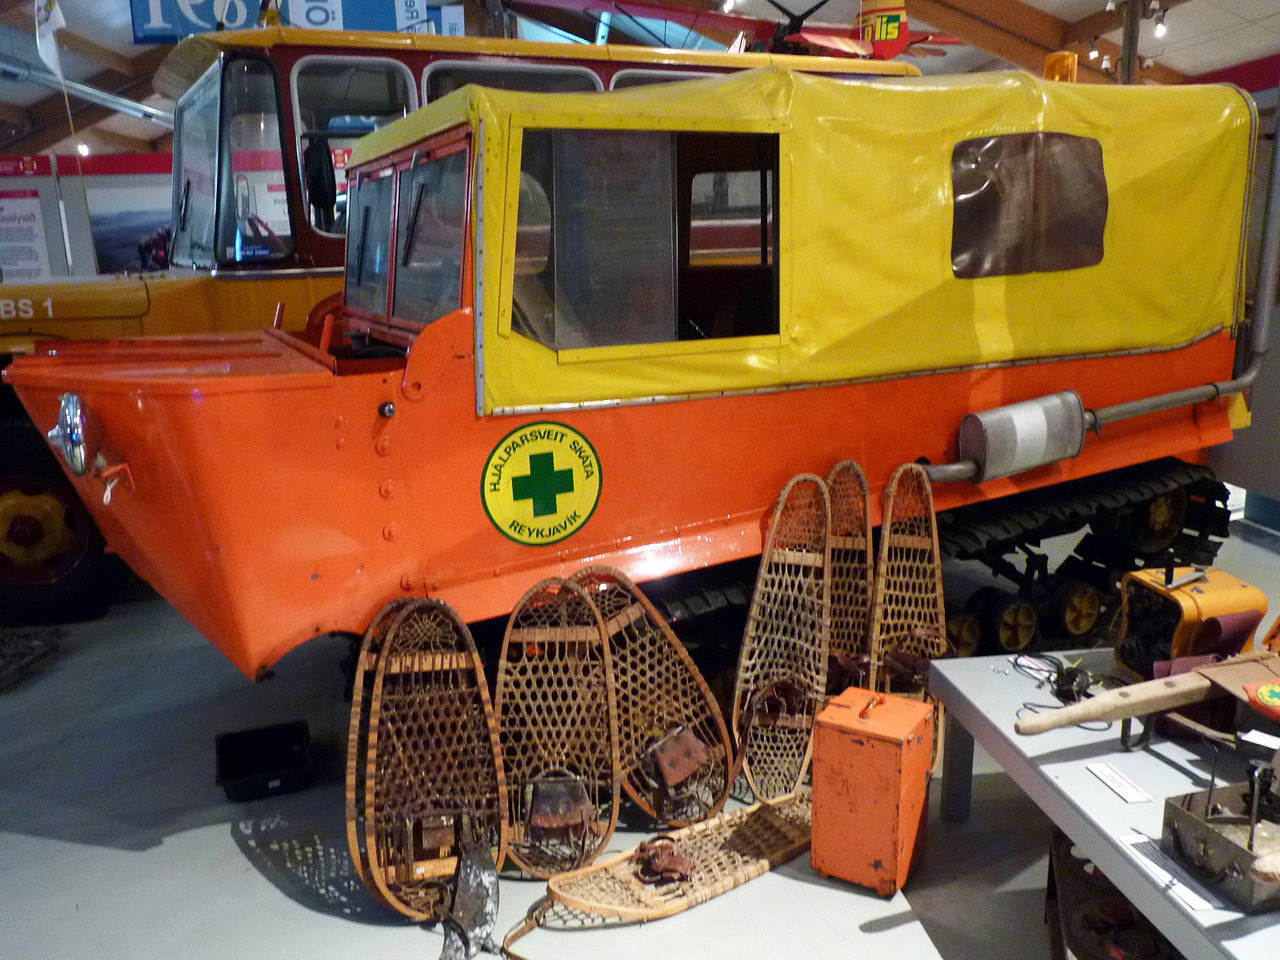 A negyvenes évektől teljesített szolgálatot az izlandi hegyimentőknél ez a lánctalpas, amelynek a felszerelését is bemutatják az izgalmas járműgyűjteménnyel rendelkező skógari múzeumban. Élénk színe elősegítette, hogy felfigyeljenek rá, illetve a gyalogosan, adott esetben a mellékelt hótalpakkal kutató mentők ne tévesszék szem elől